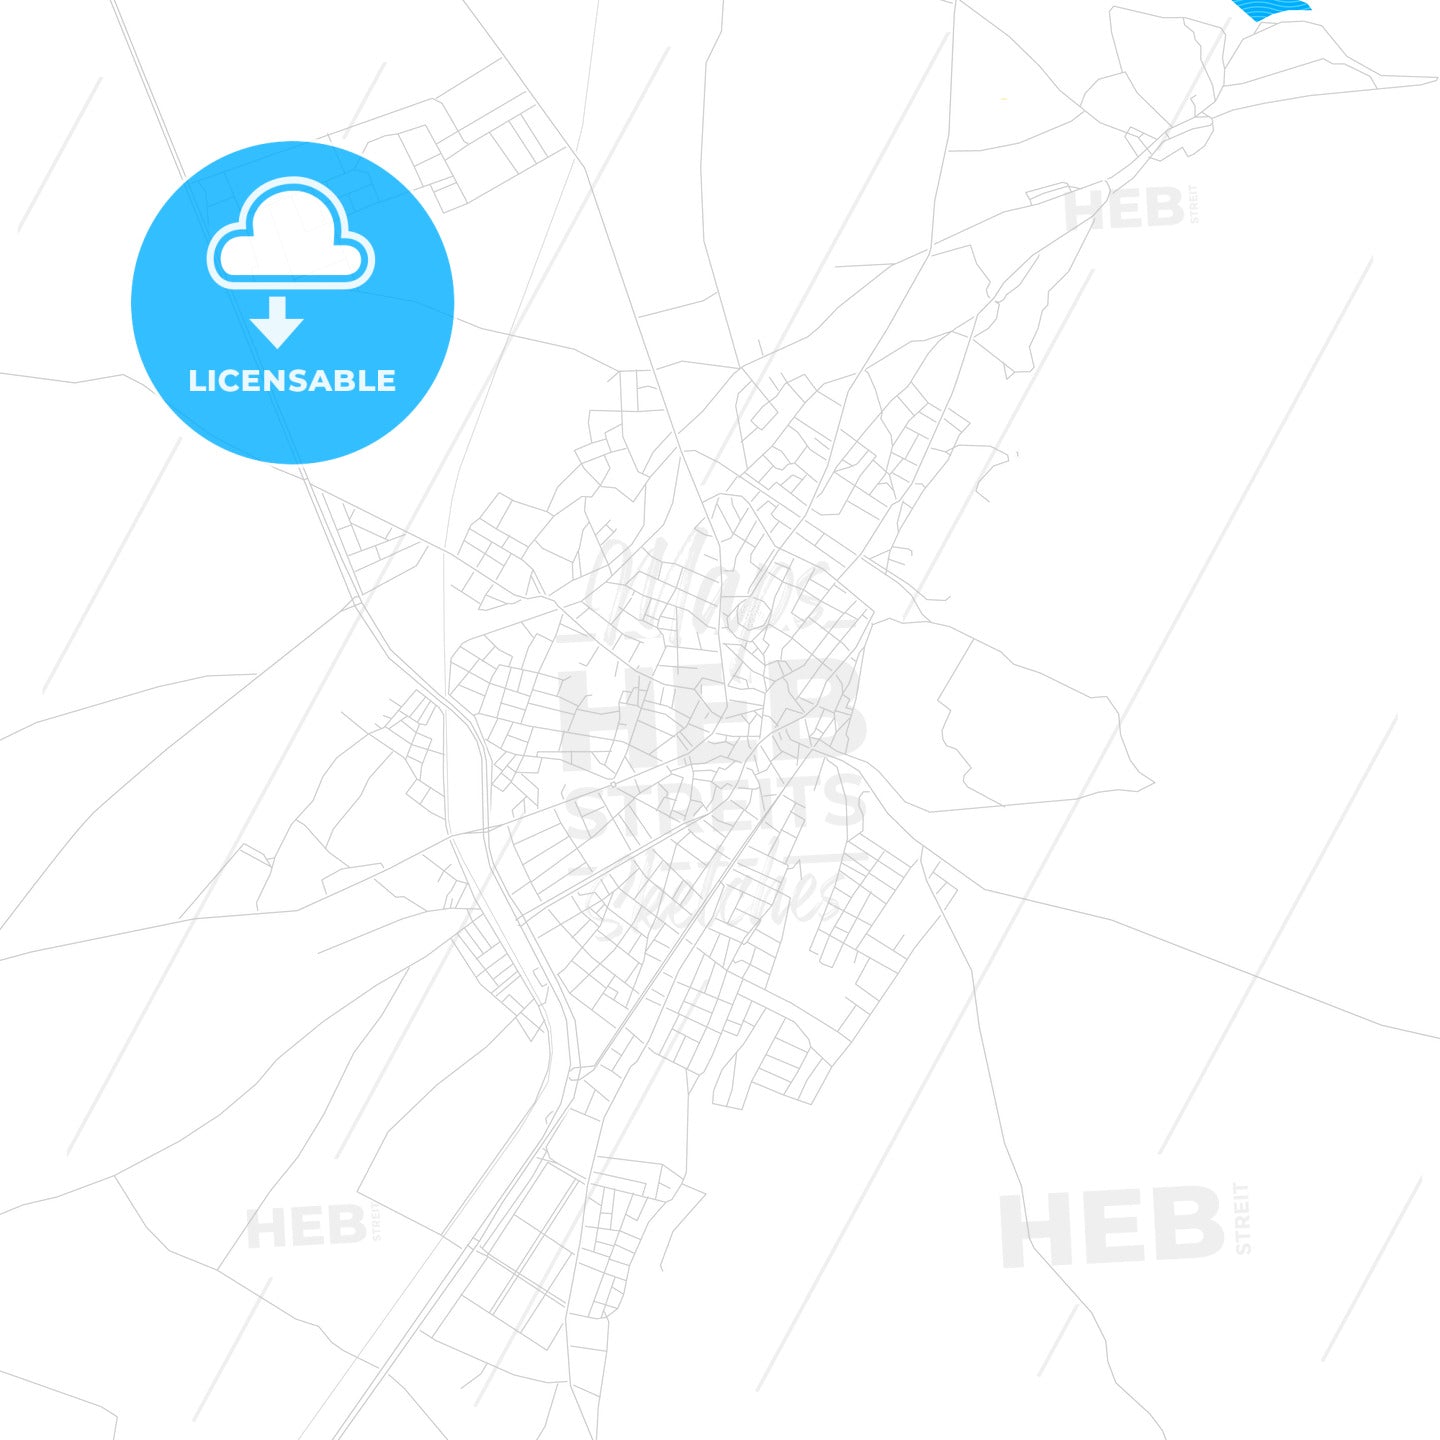 Sandıklı, Turkey PDF vector map with water in focus